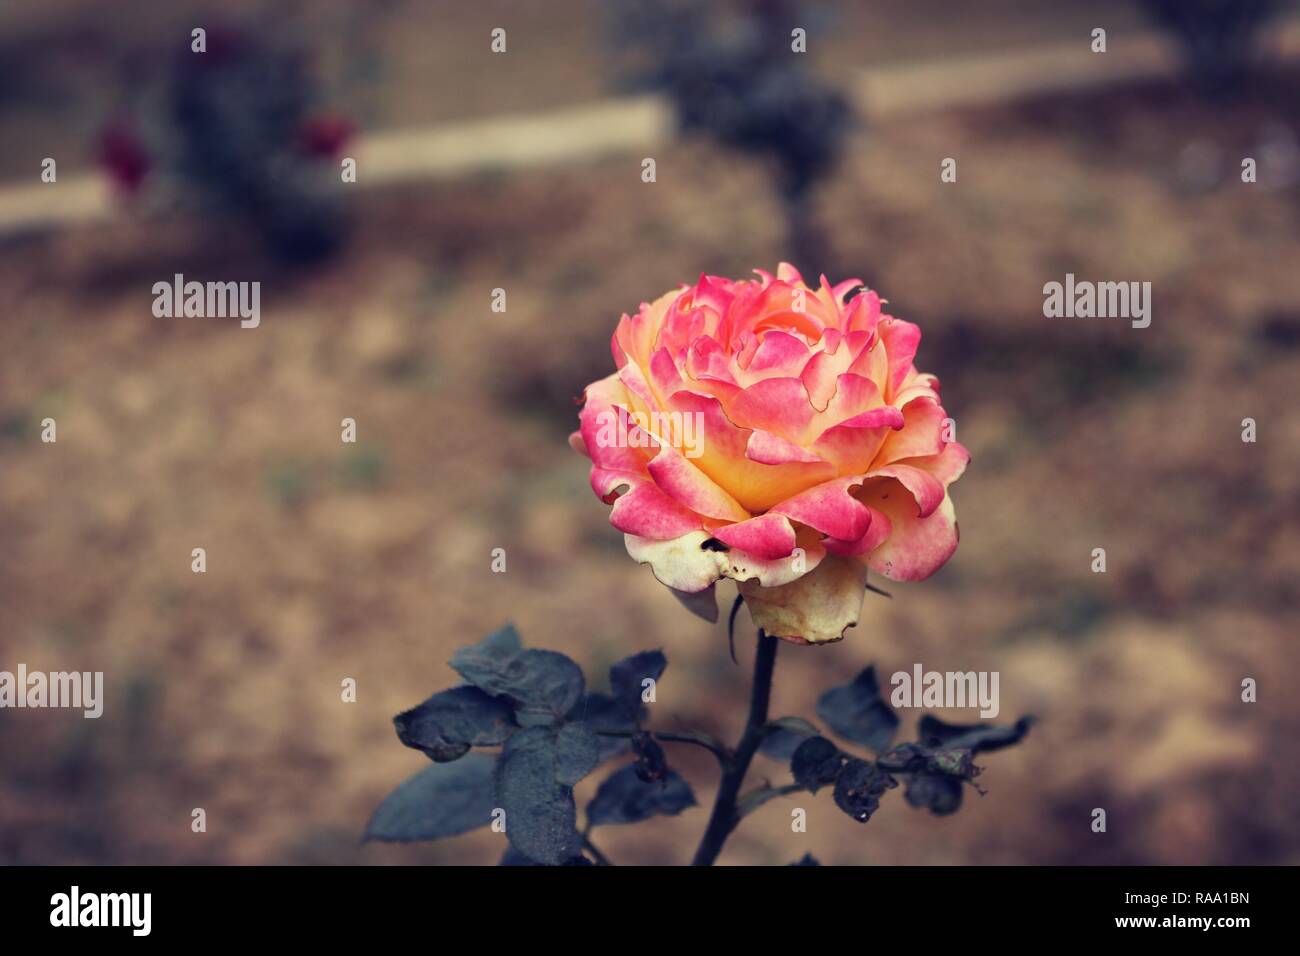 Prime rose in digital quality Stock Photo